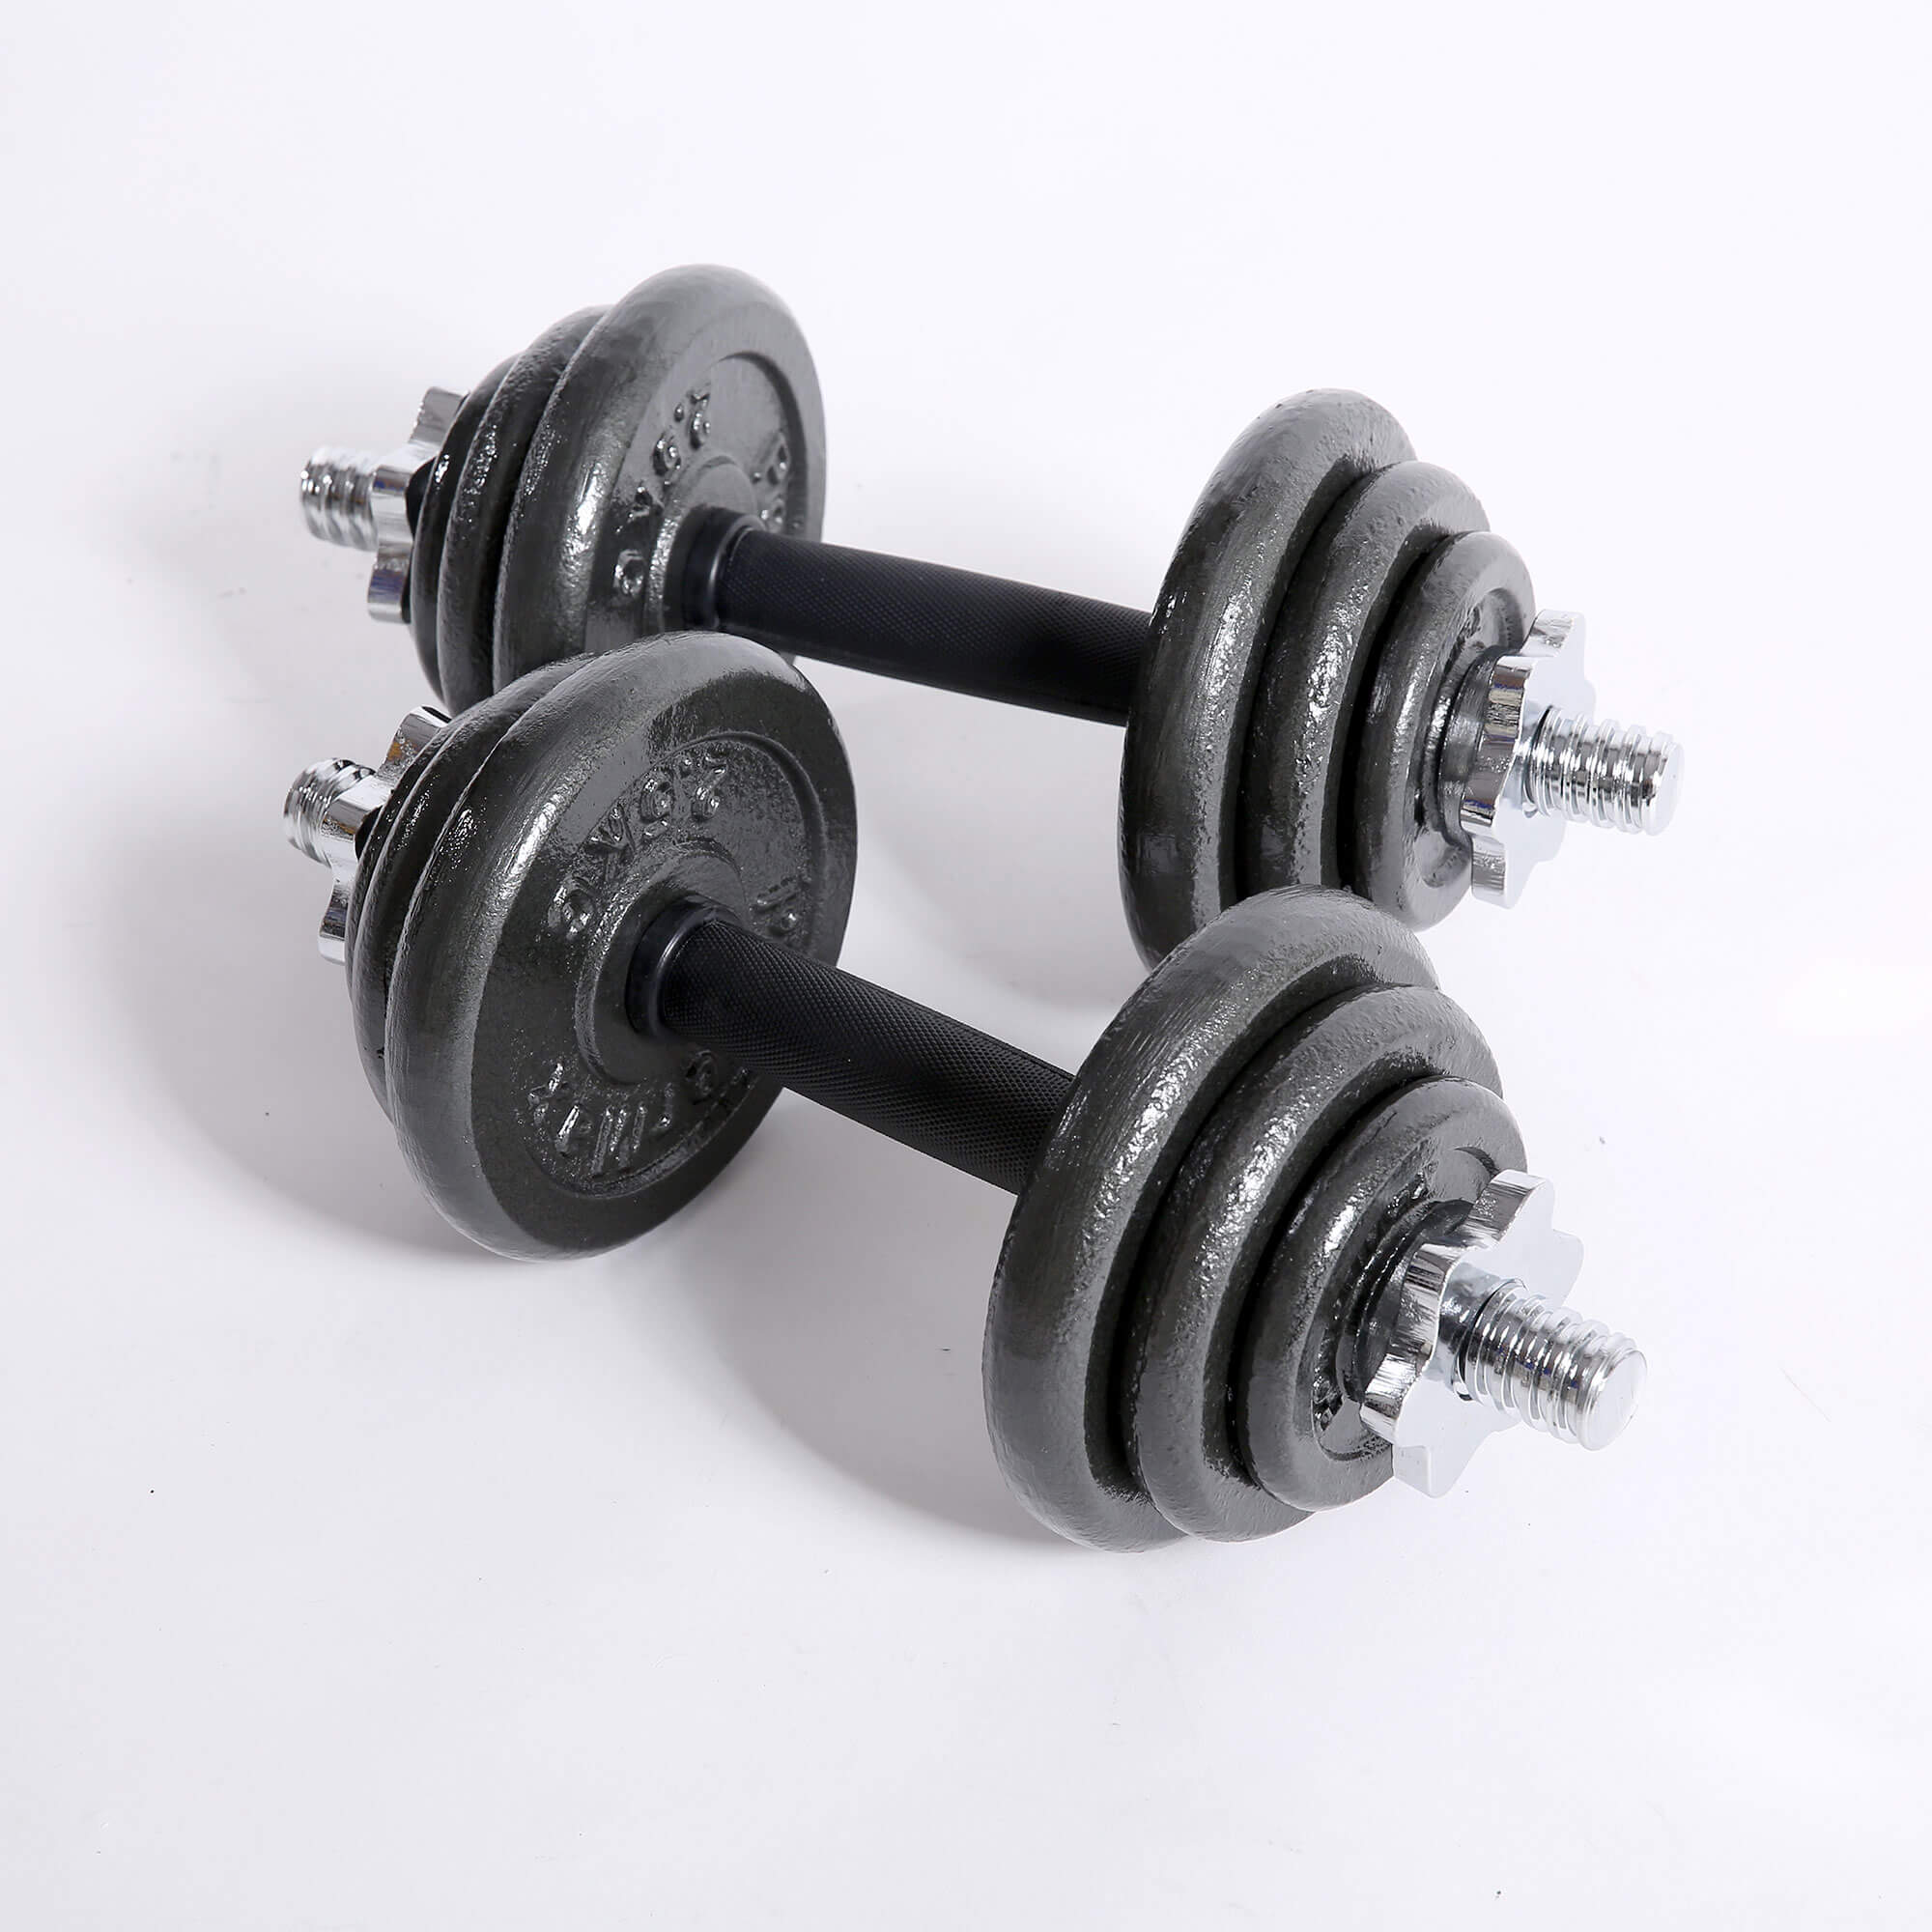 PDS-20Kg Dumbbells Set Metal Plates + Dumbbell Rods Home Gym